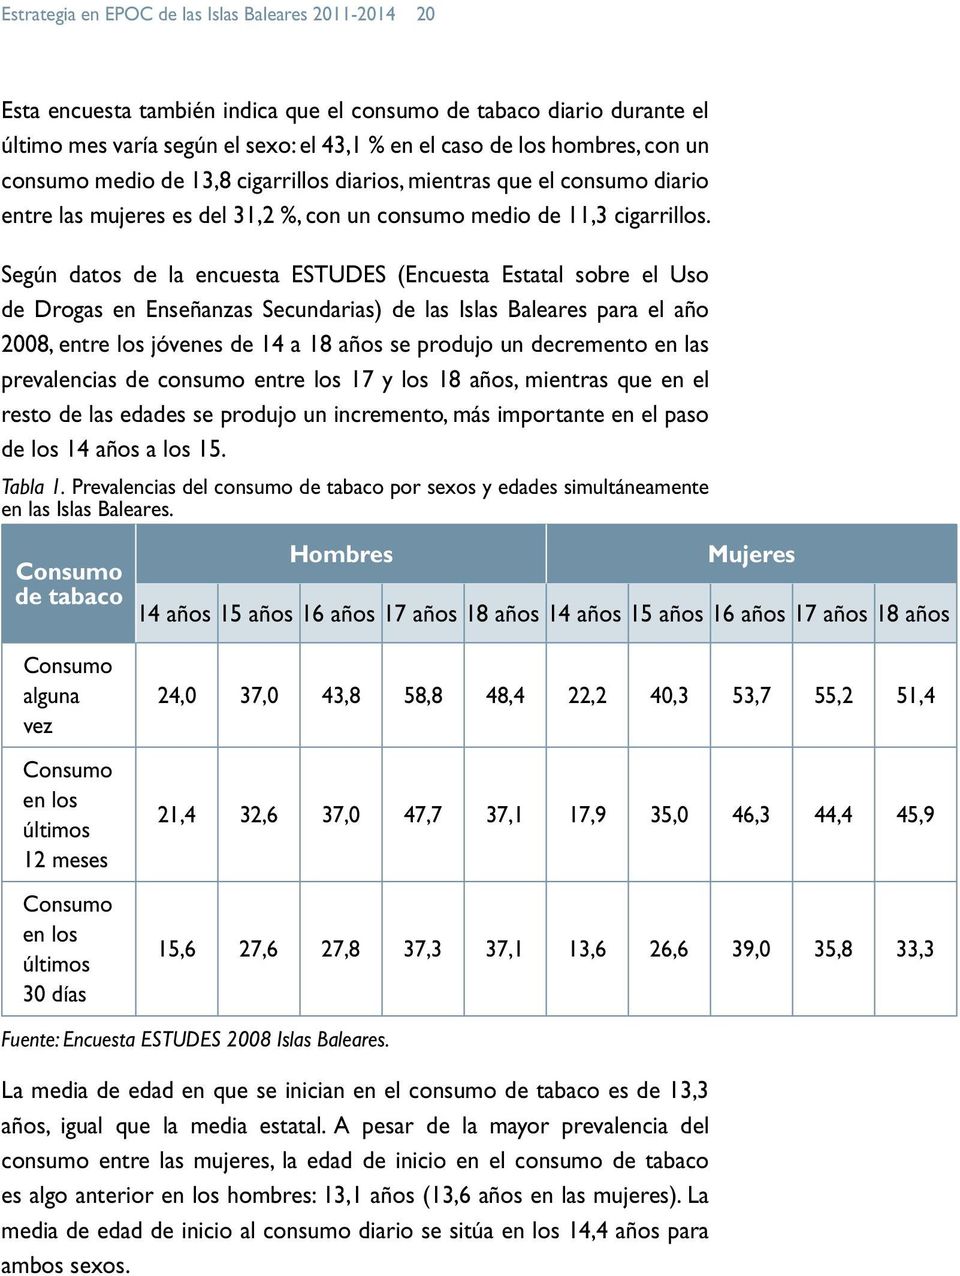 Según datos de la encuesta ESTUDES (Encuesta Estatal sobre el Uso de Drogas en Enseñanzas Secundarias) de las Islas Baleares para el año 2008, entre los jóvenes de 14 a 18 años se produjo un